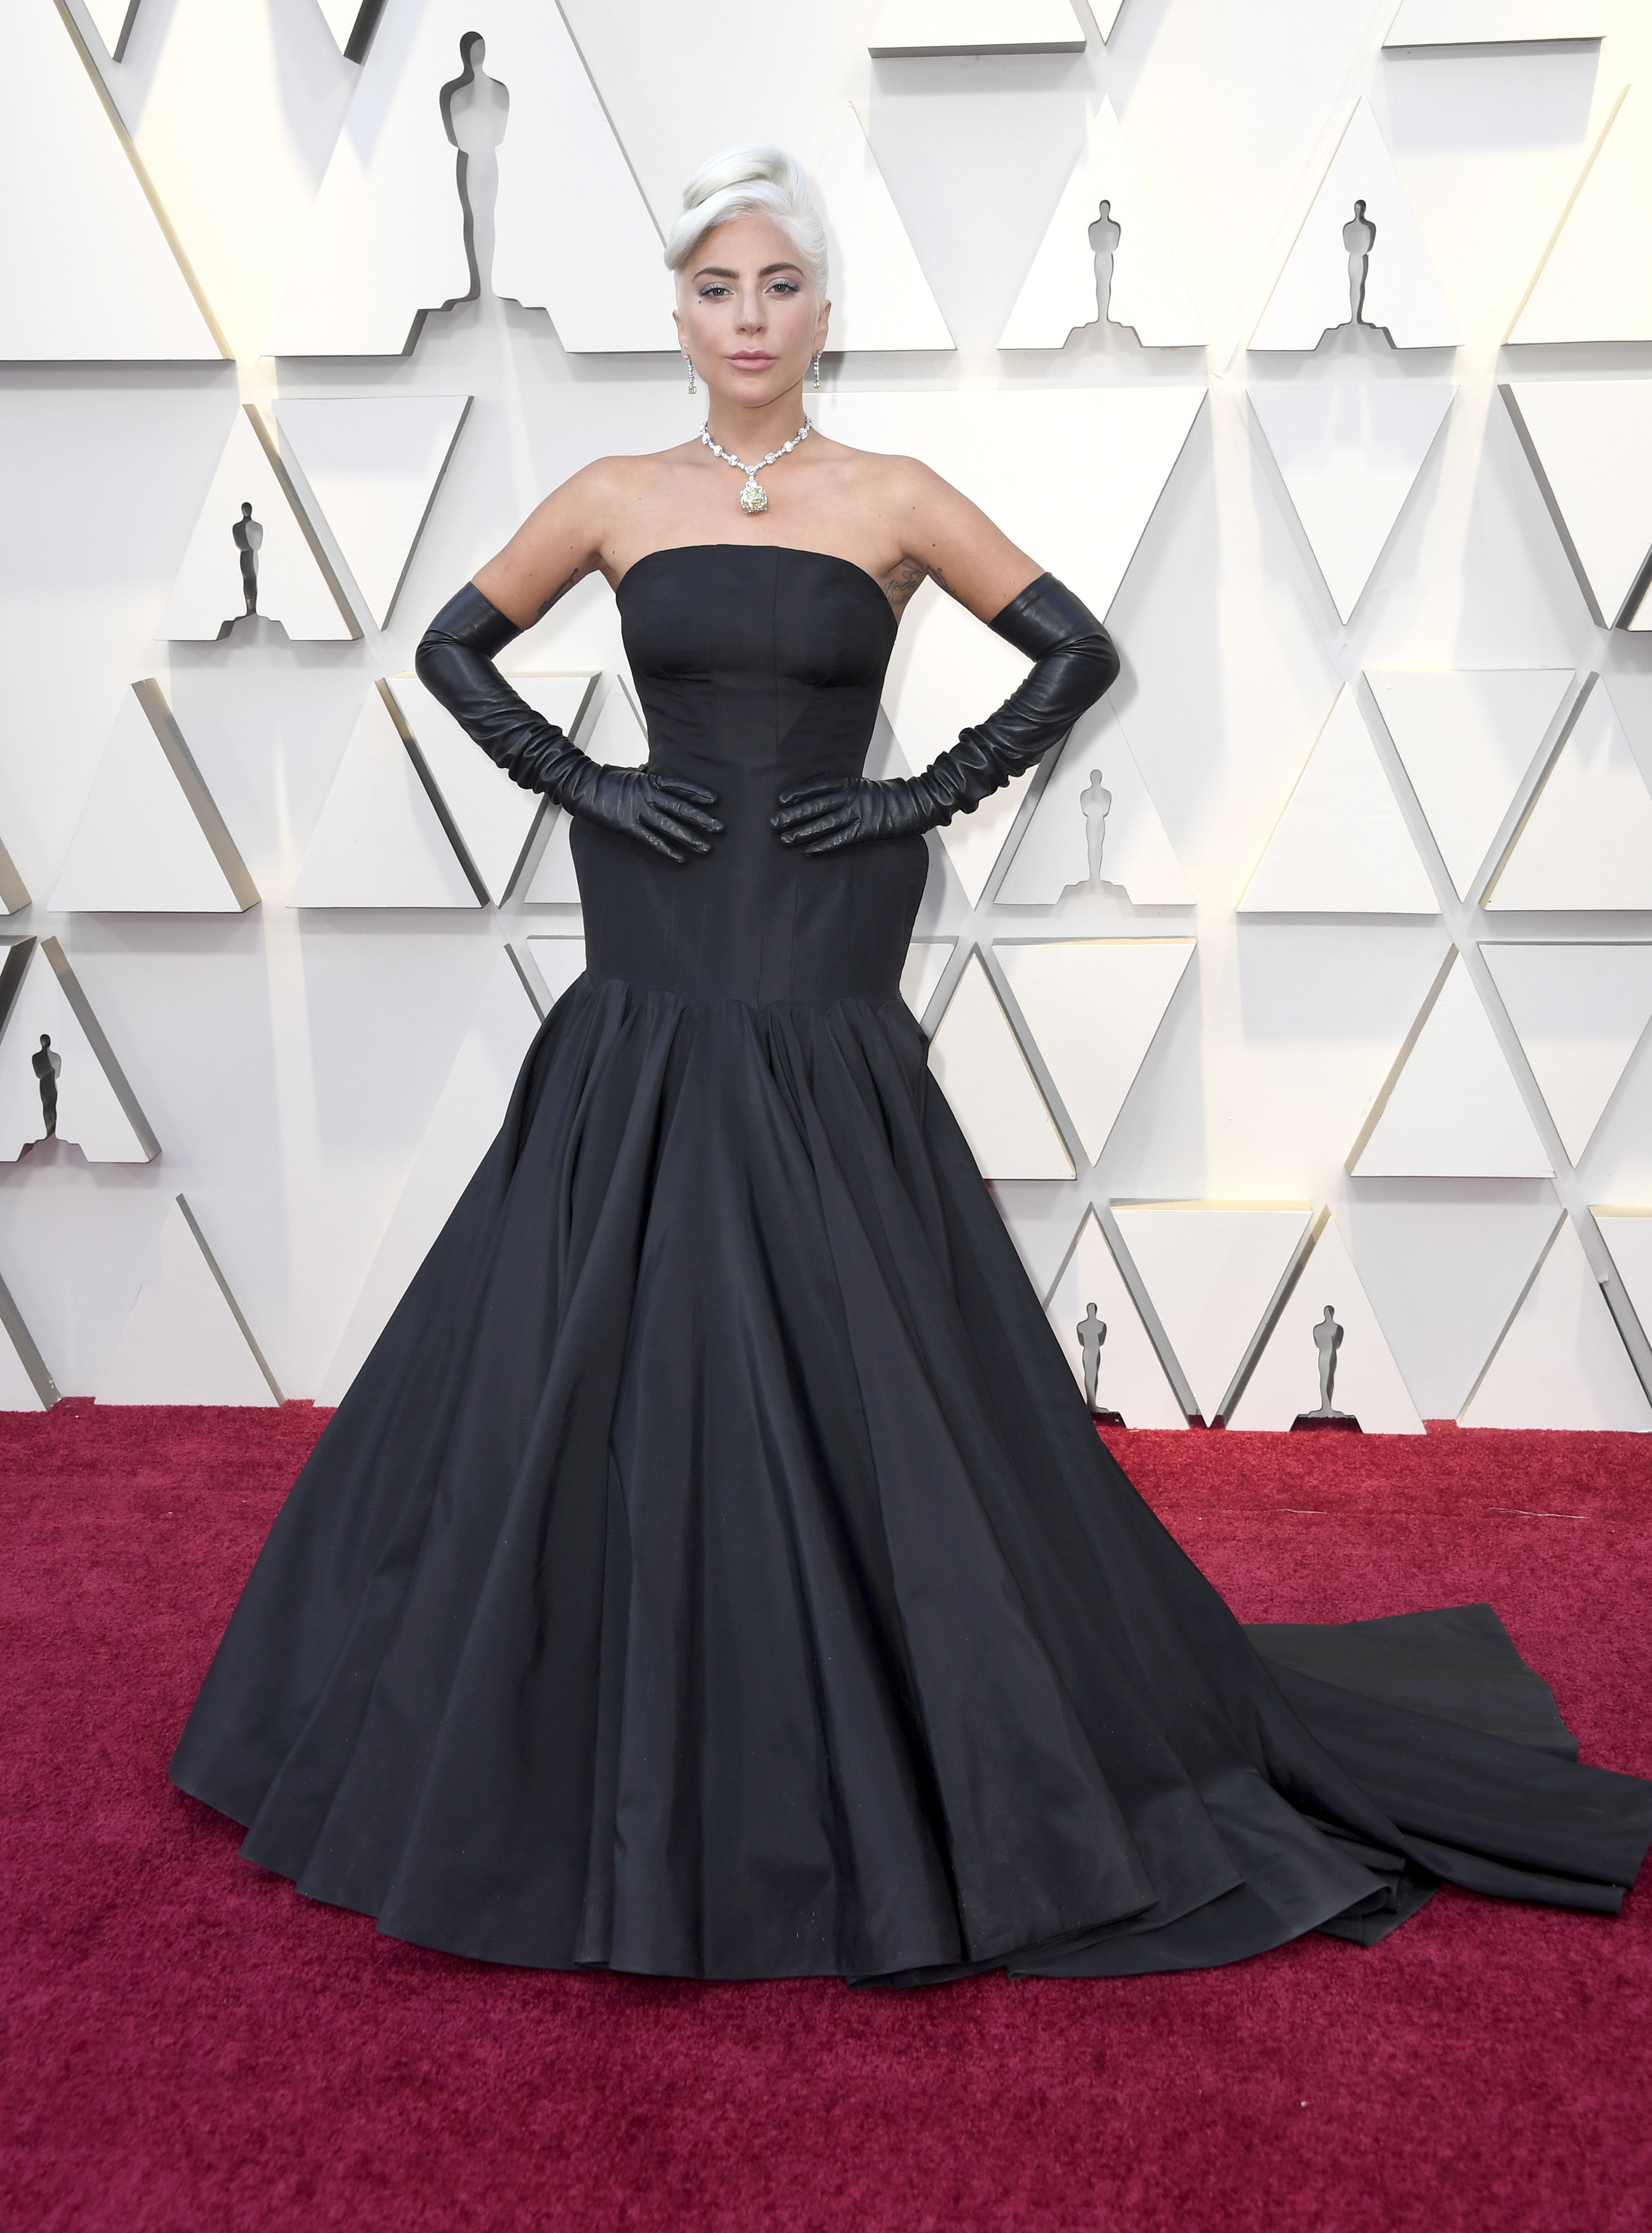 Lady Gaga穿着一件全黑的礼服,看起来非常古老的好莱坞